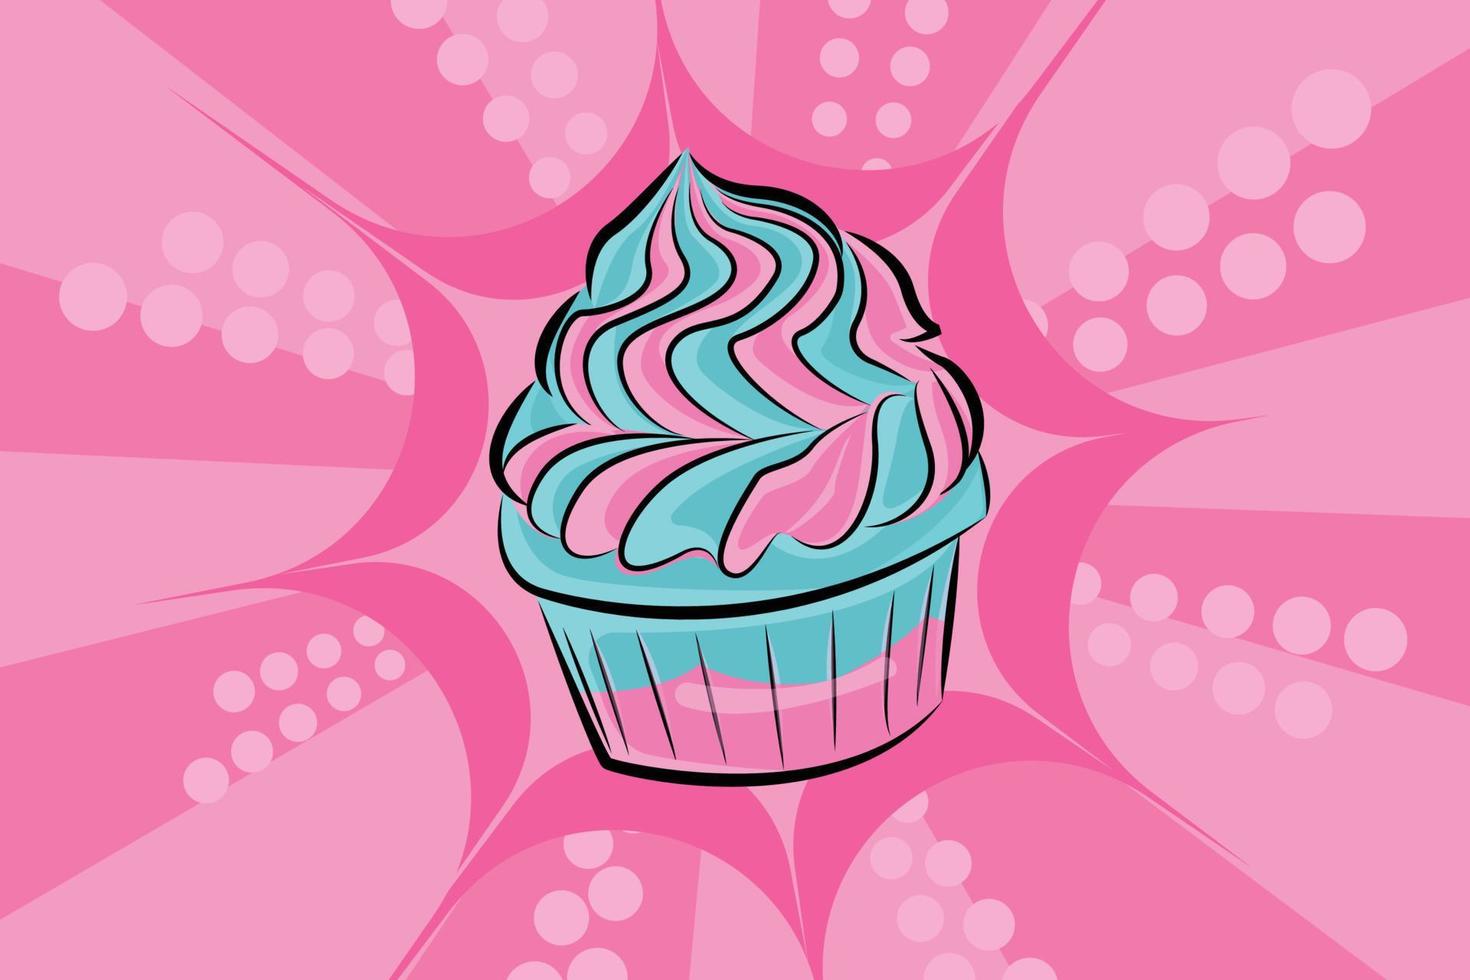 cartone animato di cupcakes dolci con sfondo rosa. illustrazione vettoriale